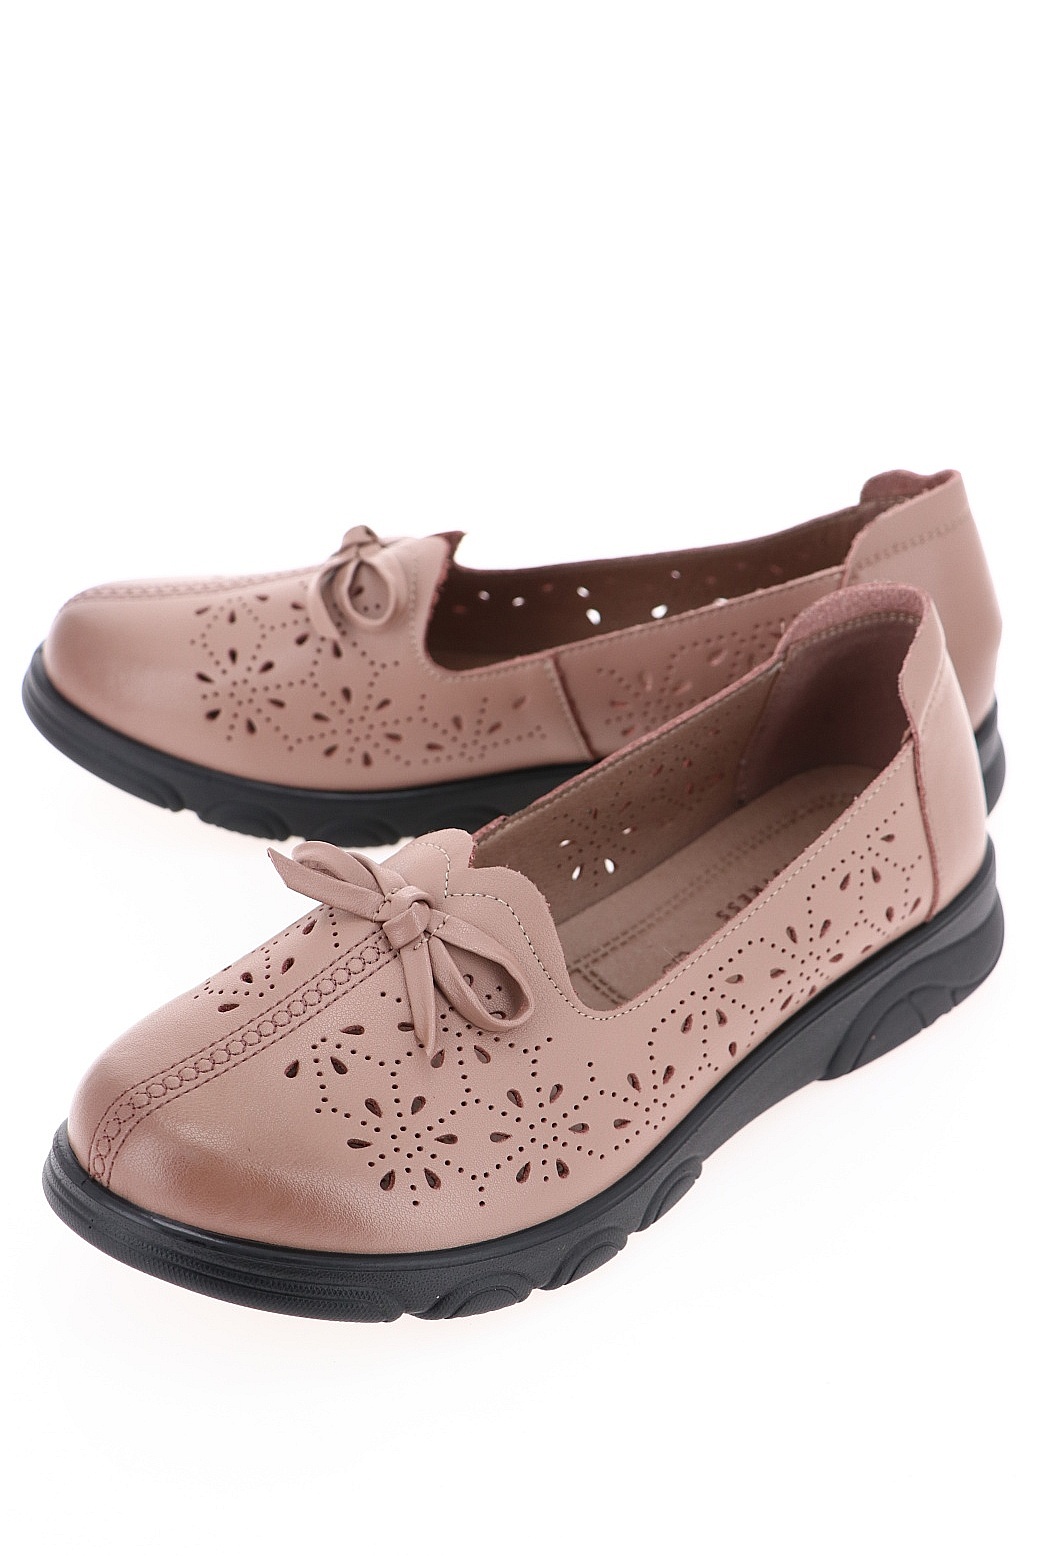 Туфли женские Baden AC066-01 коричневые 37 RU